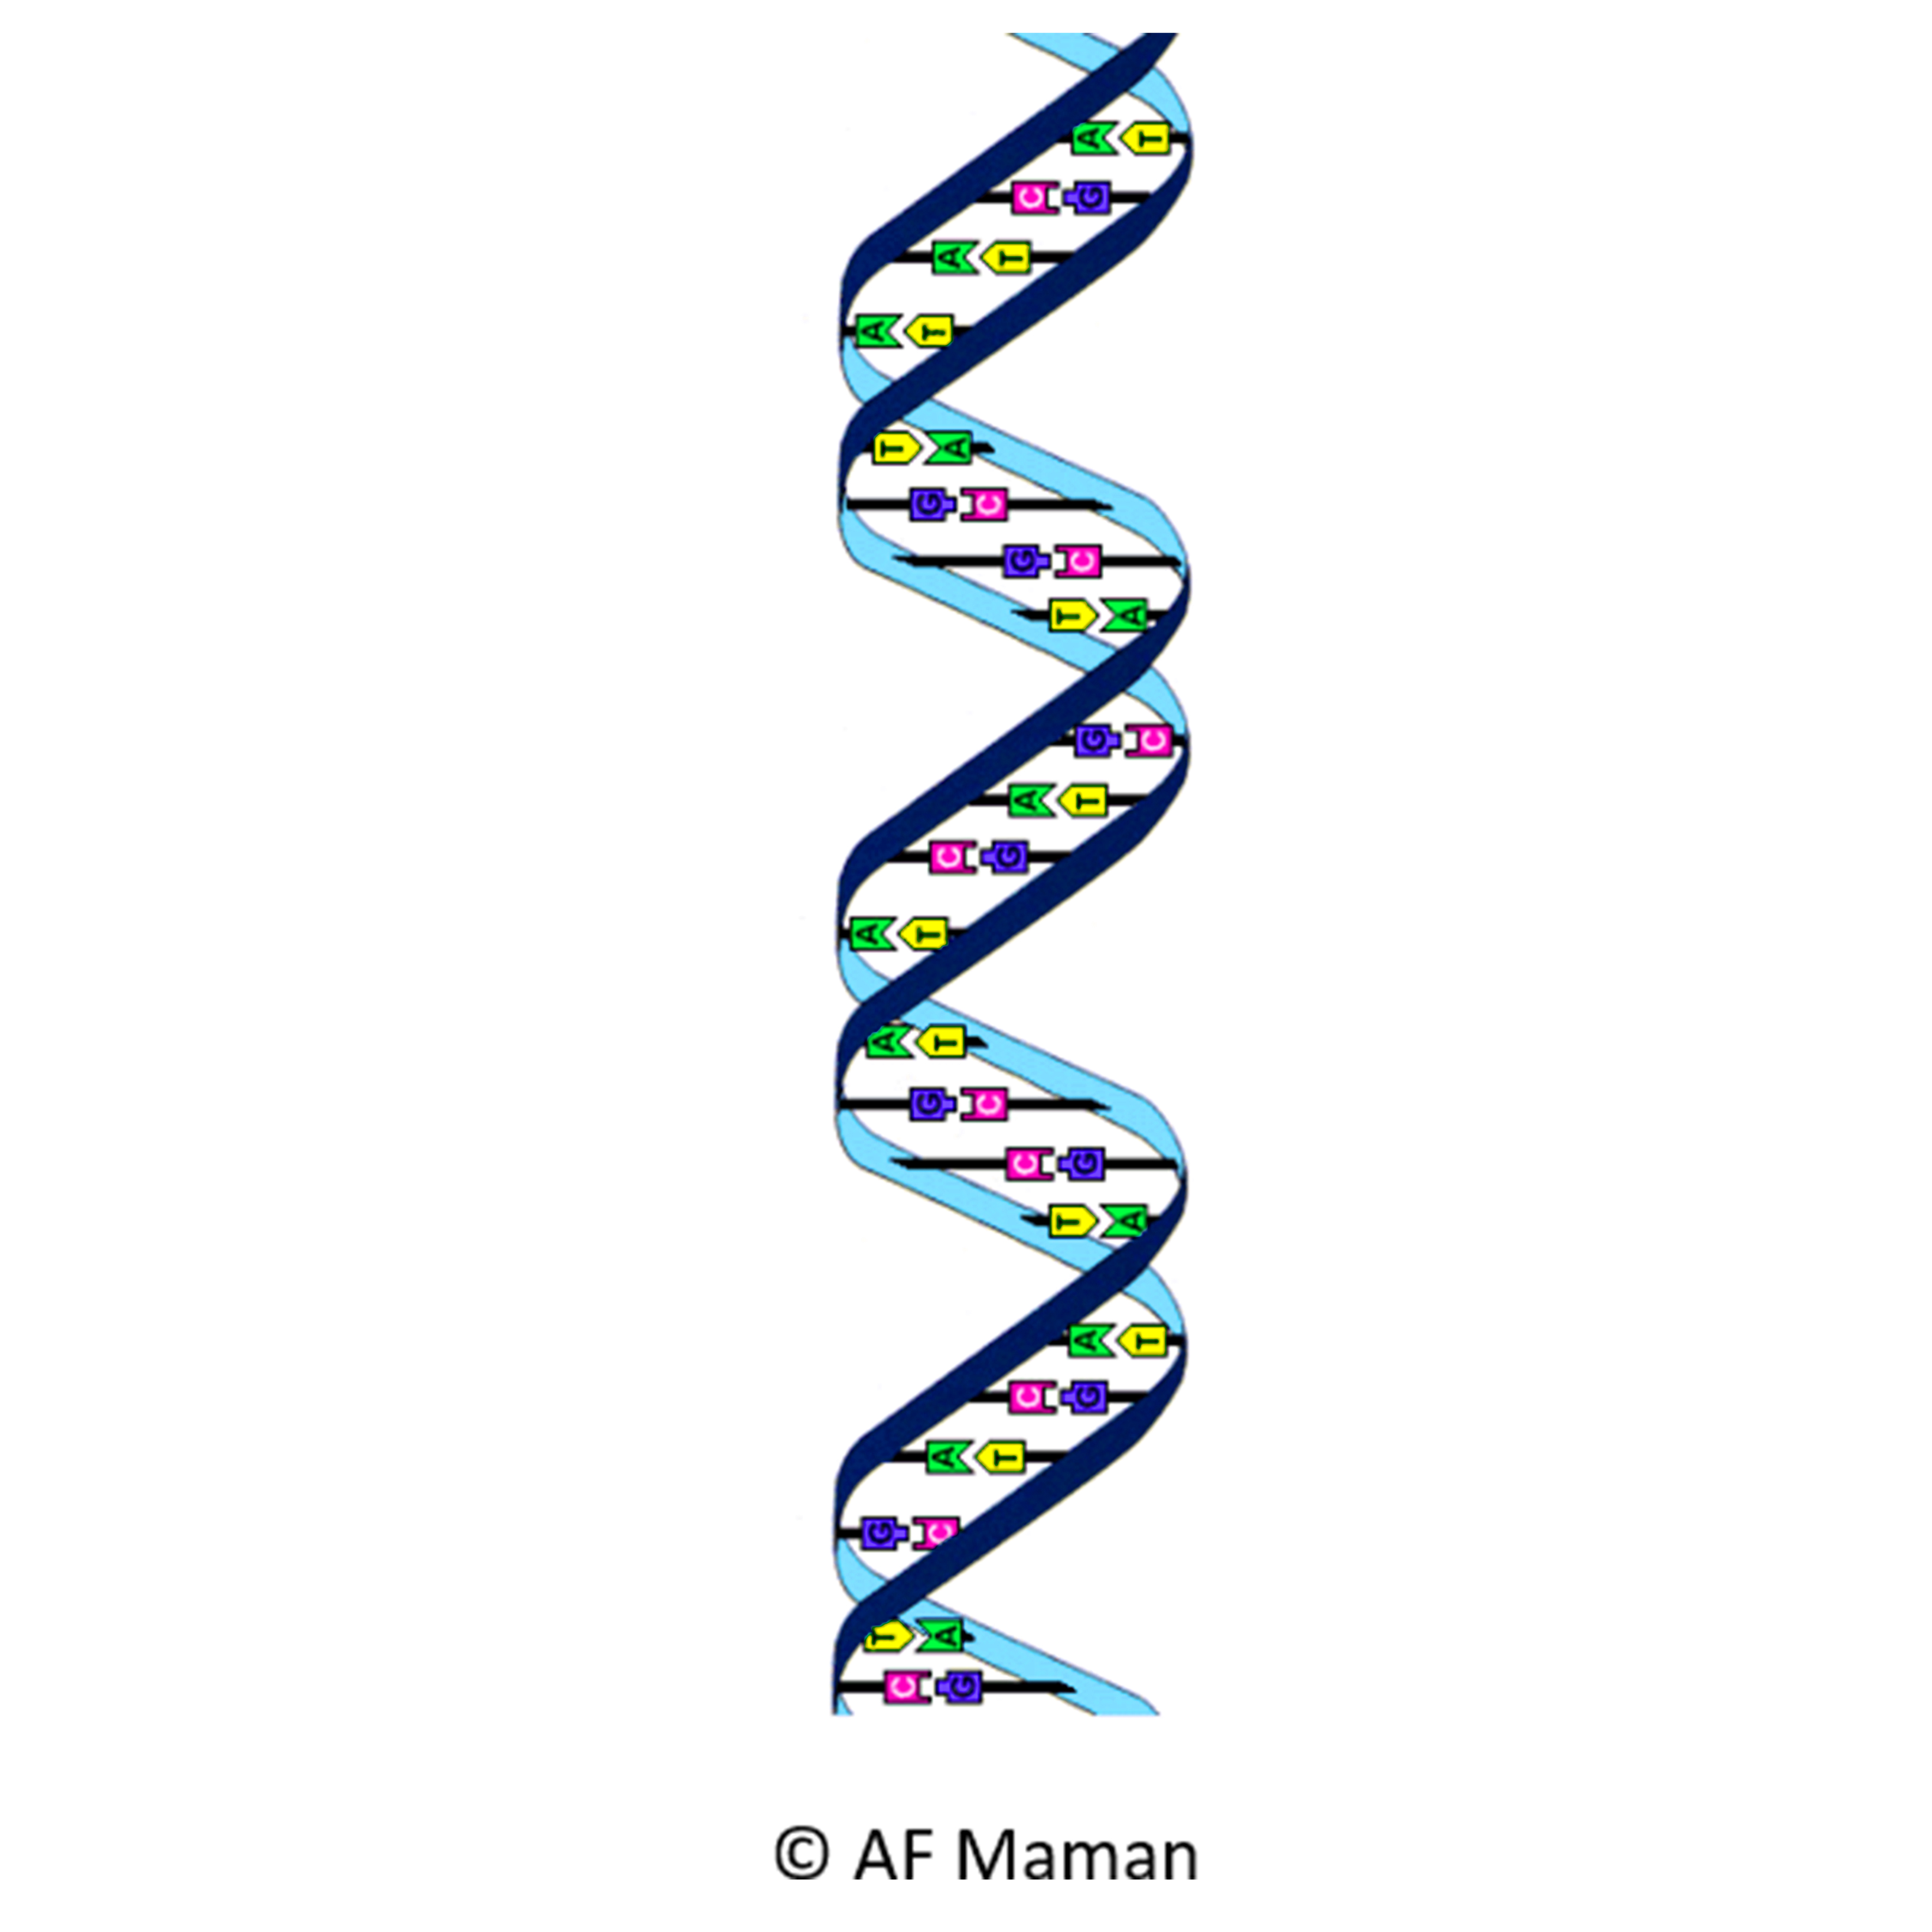 SémioConsult DNA